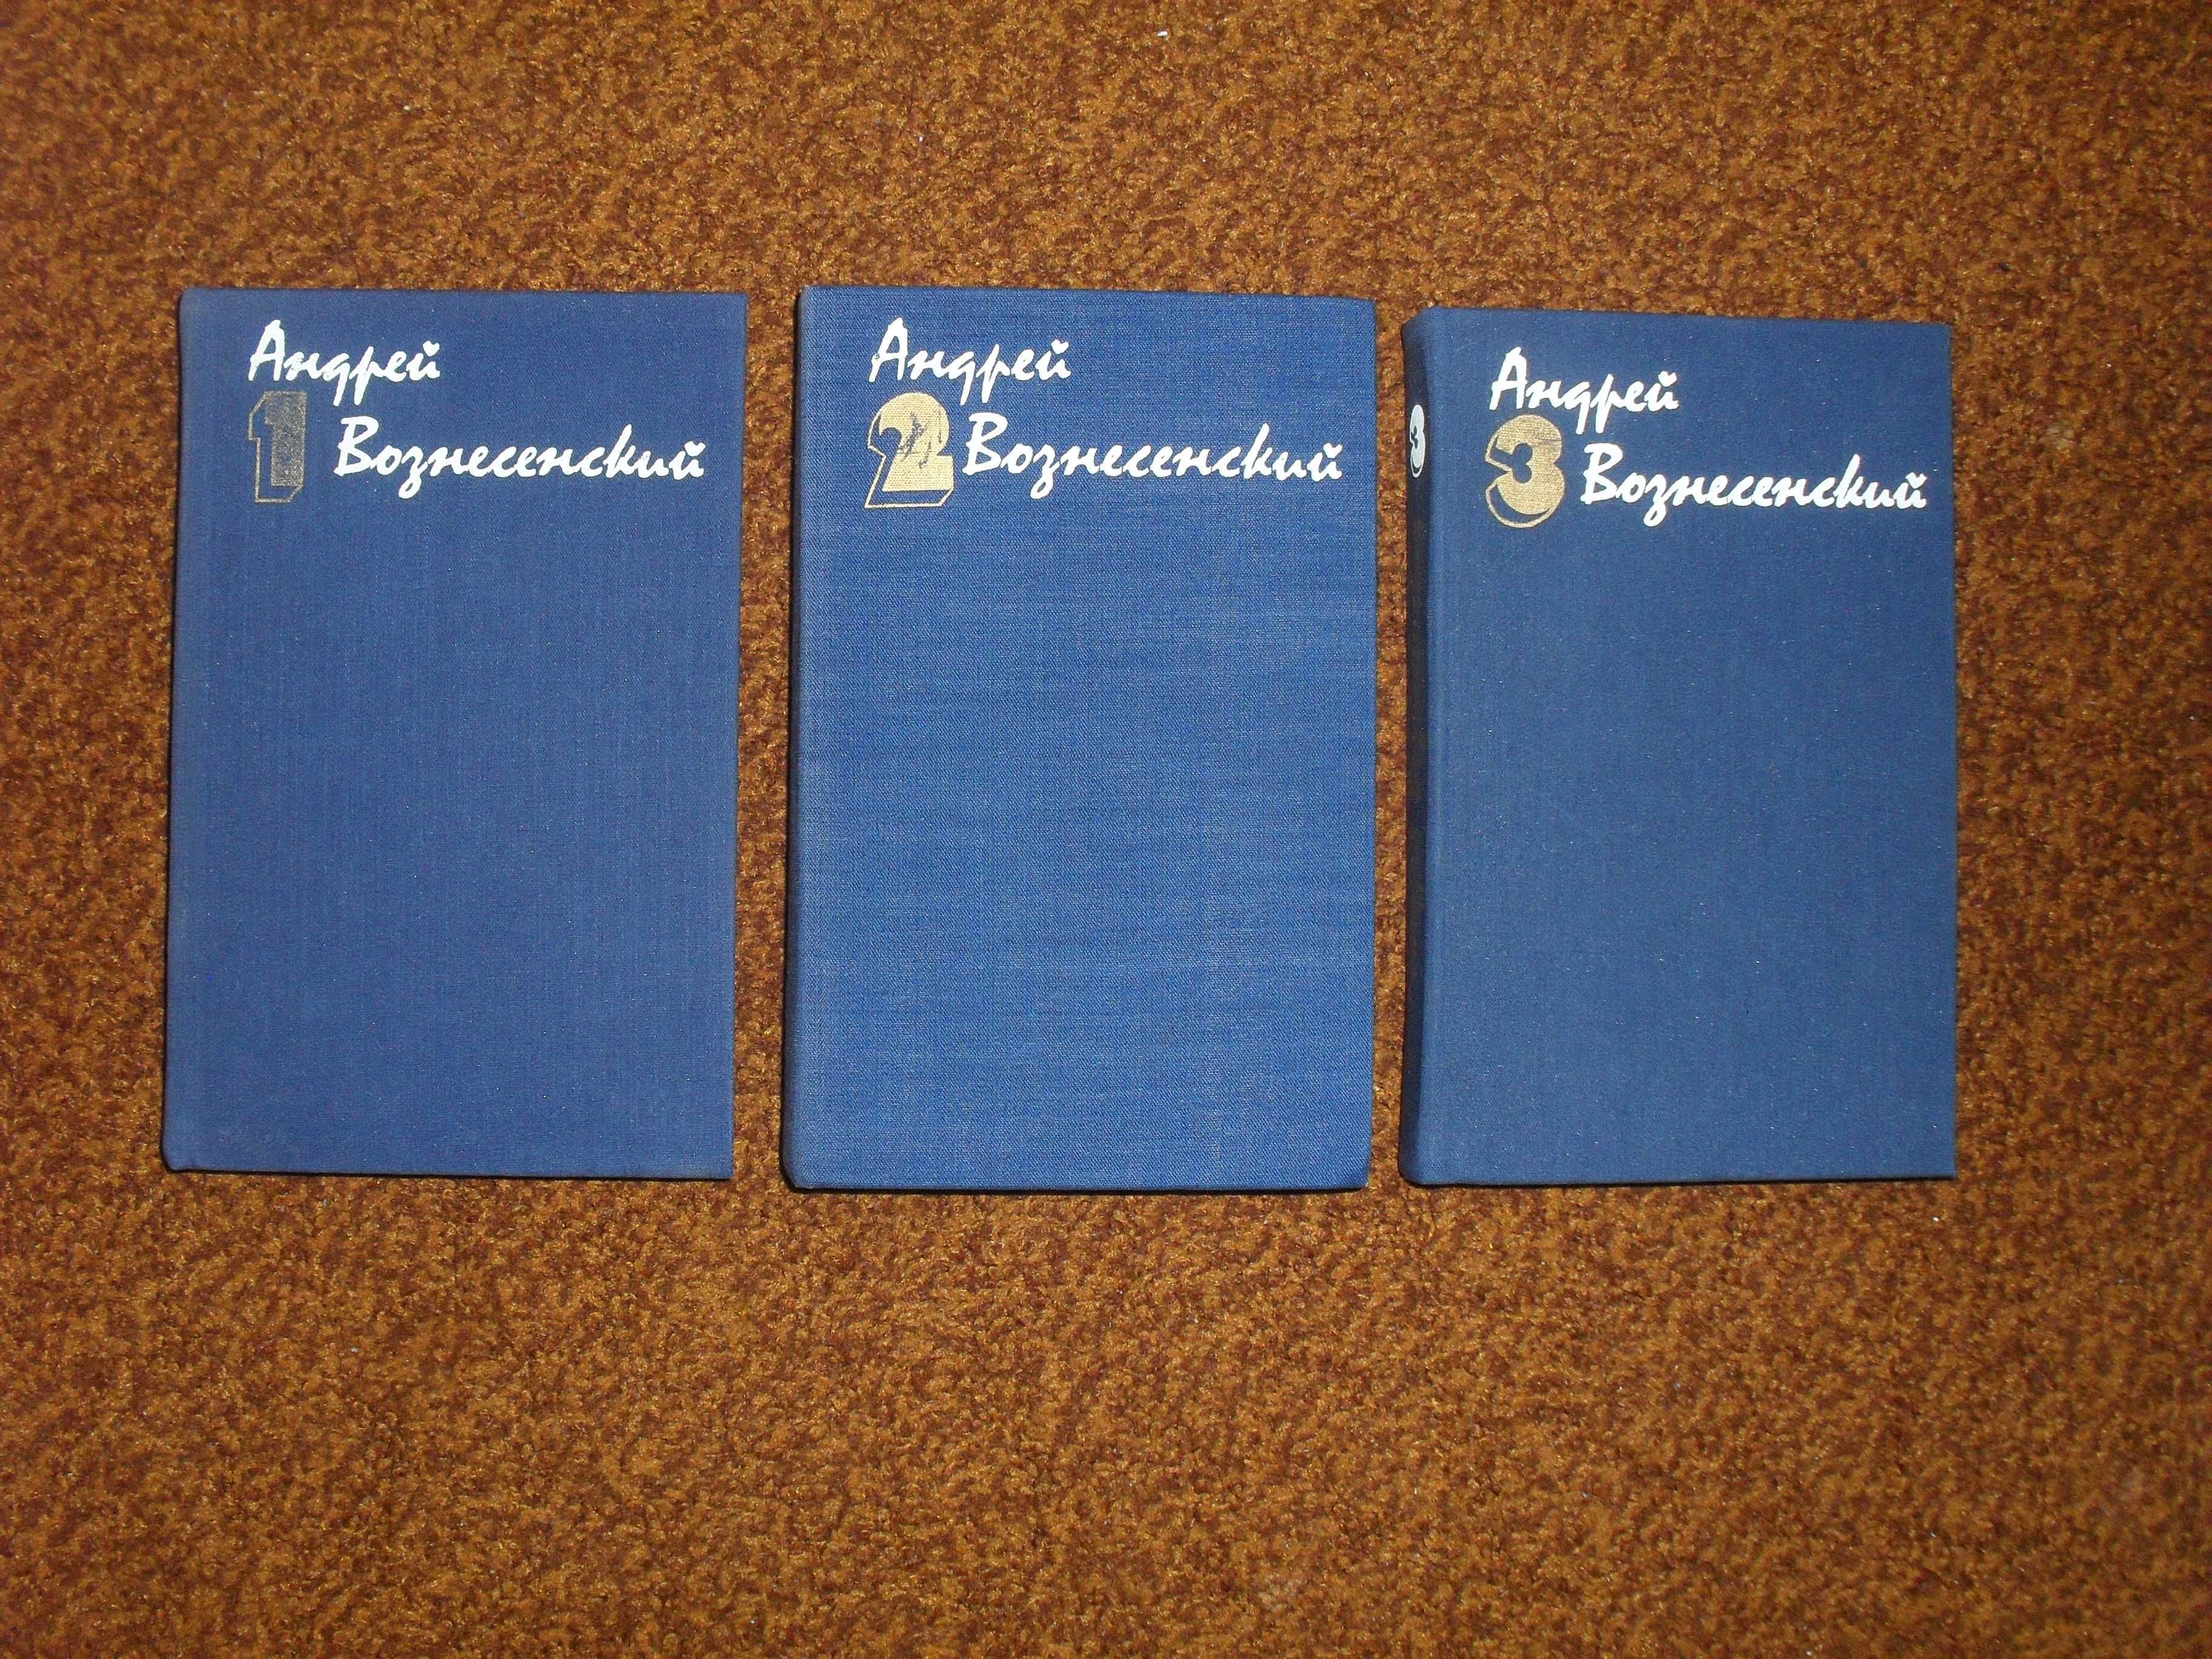 Вознесенский А. Собрание сочинений в 3-х томах 1983-1984гг.